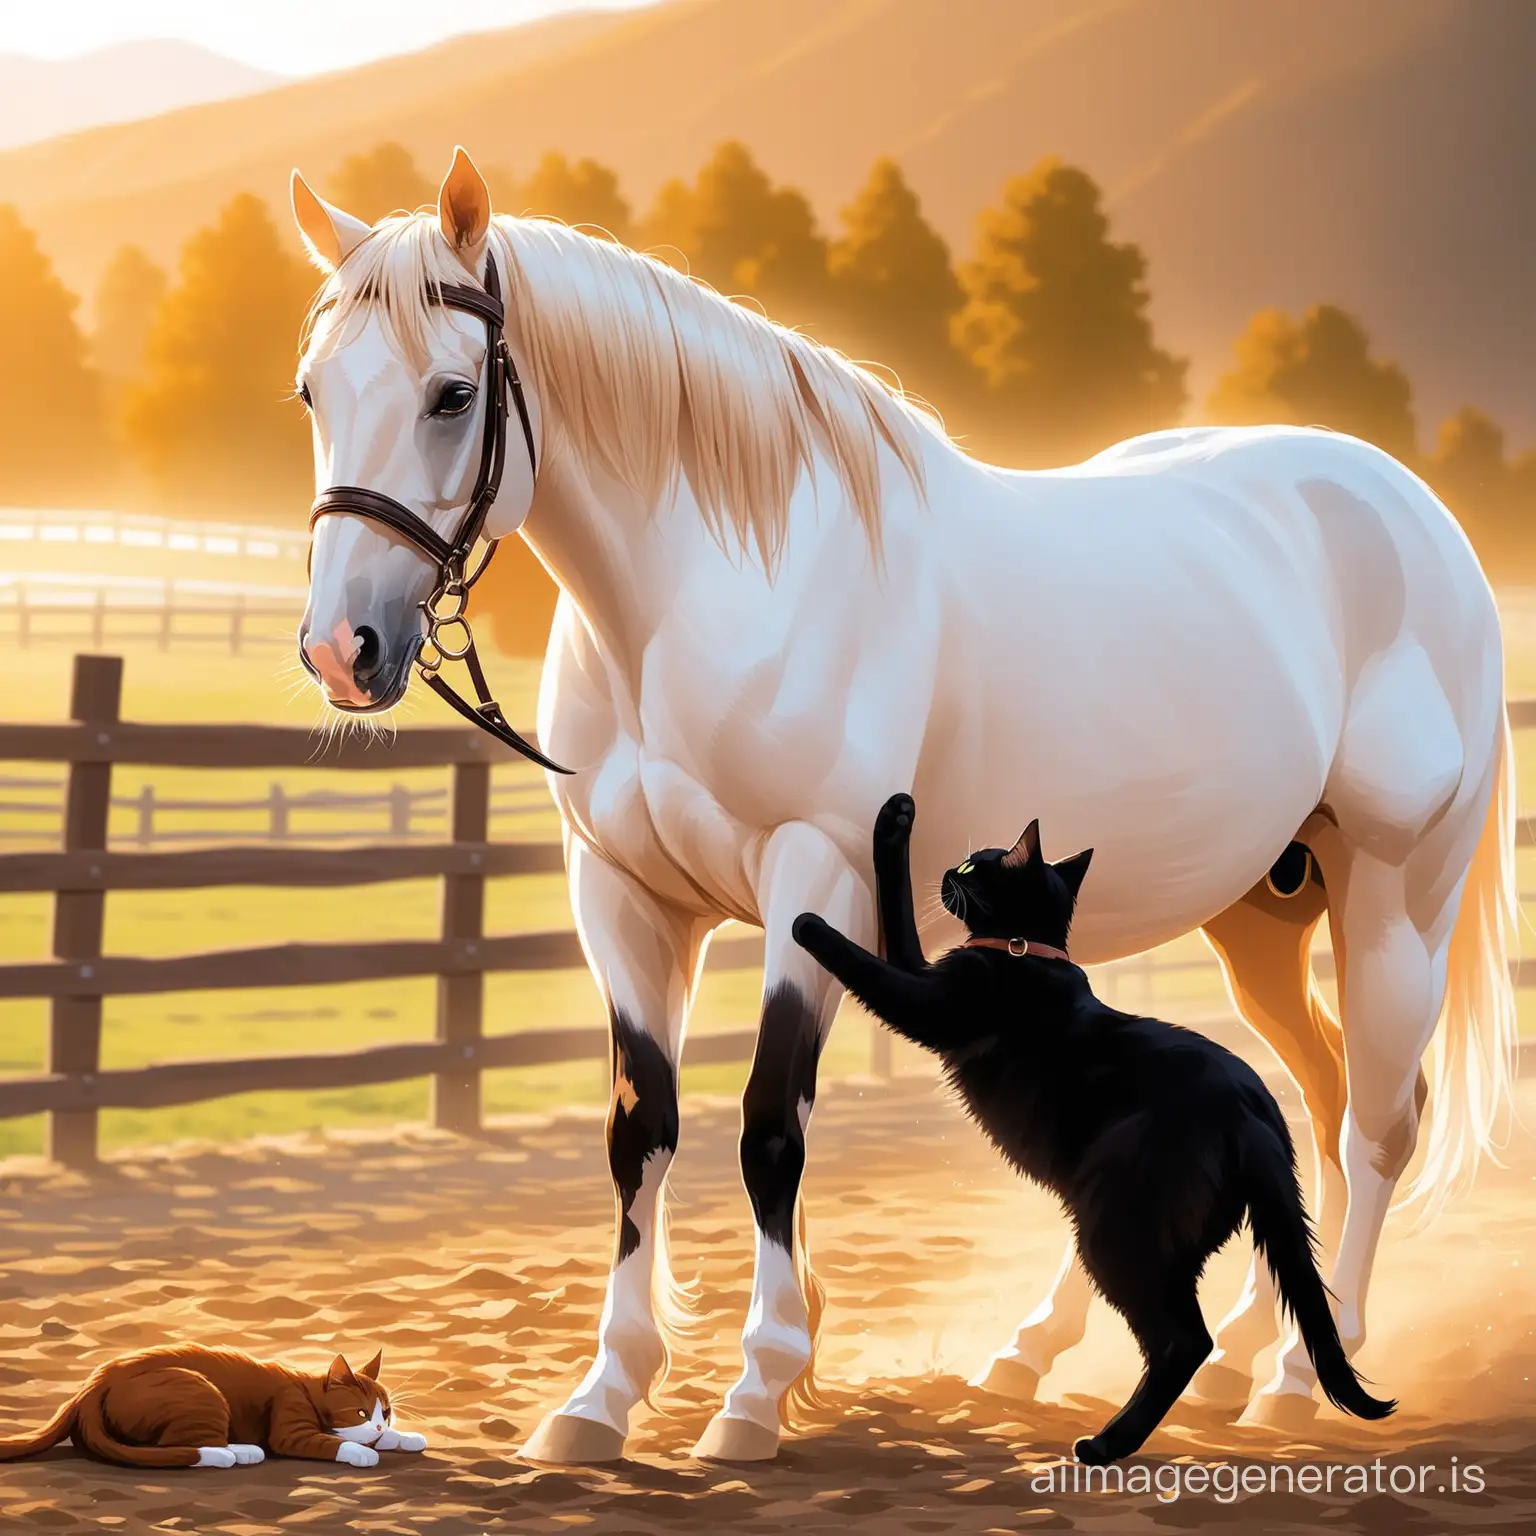 a cat ridig a horse